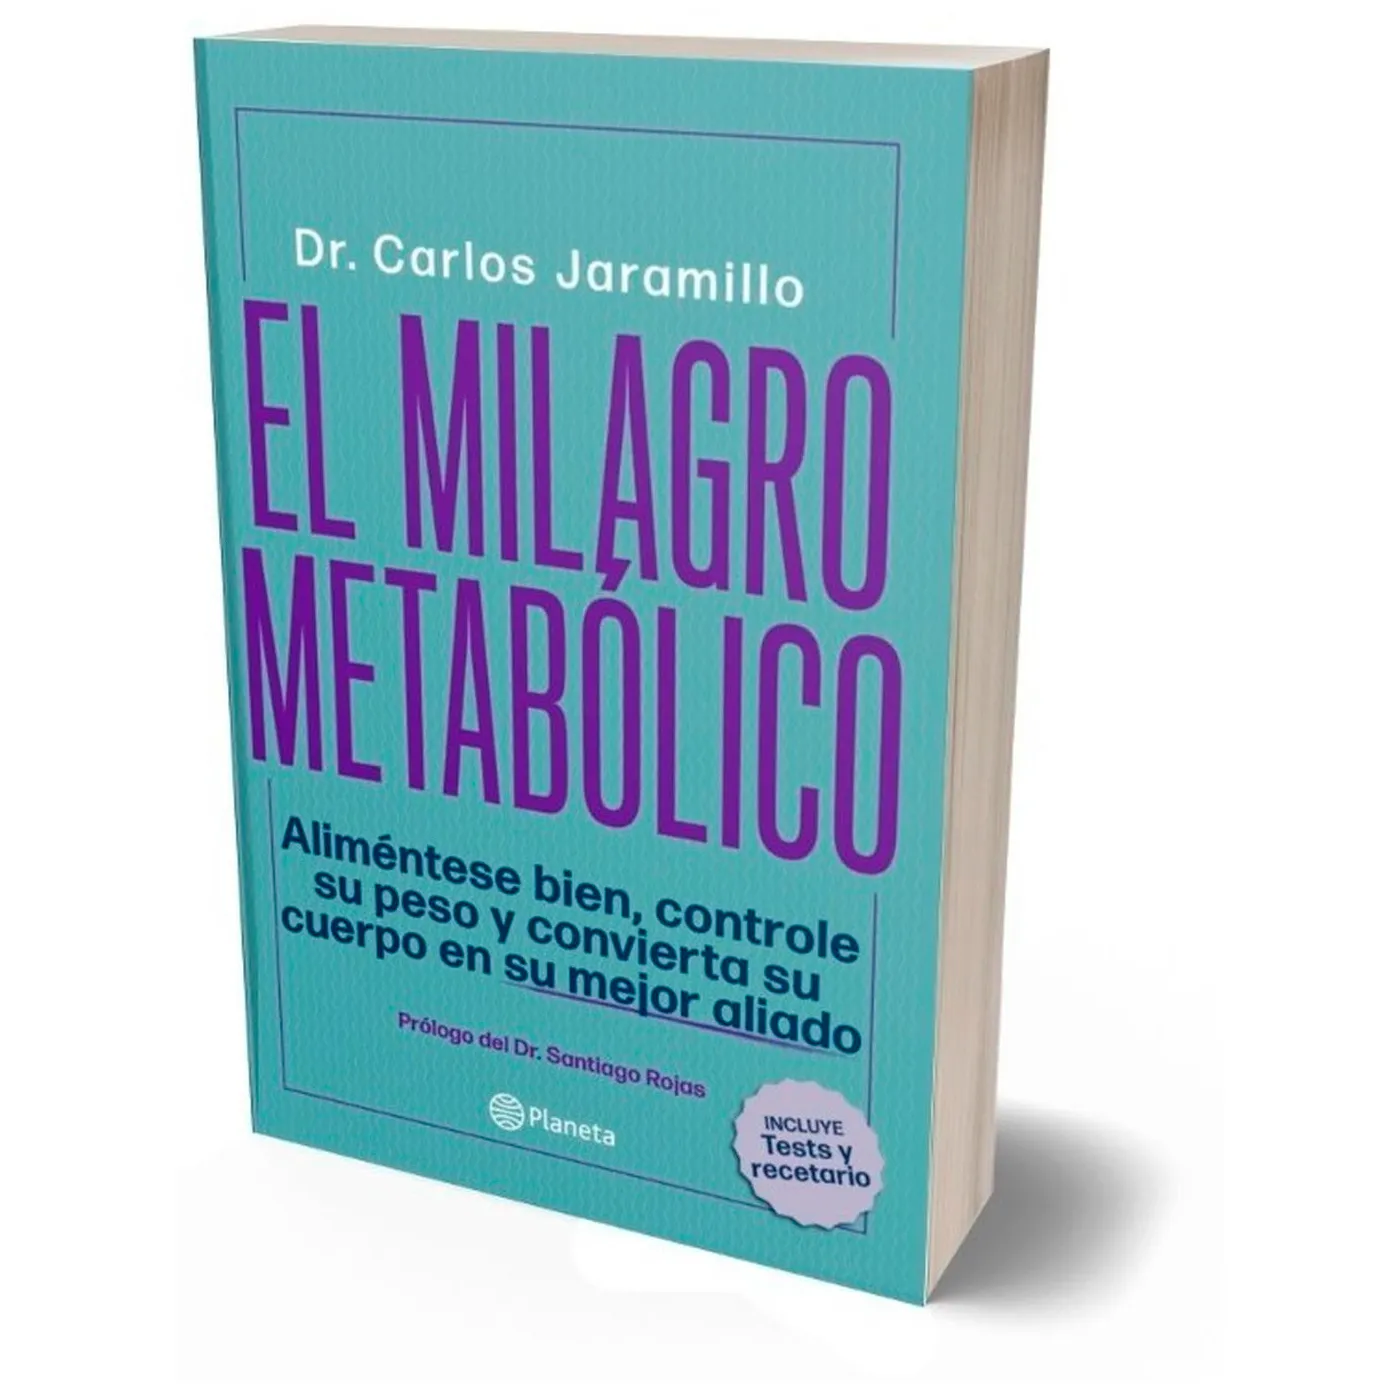 El Milagro Metabólico. Dr. Carlos Jaramillo